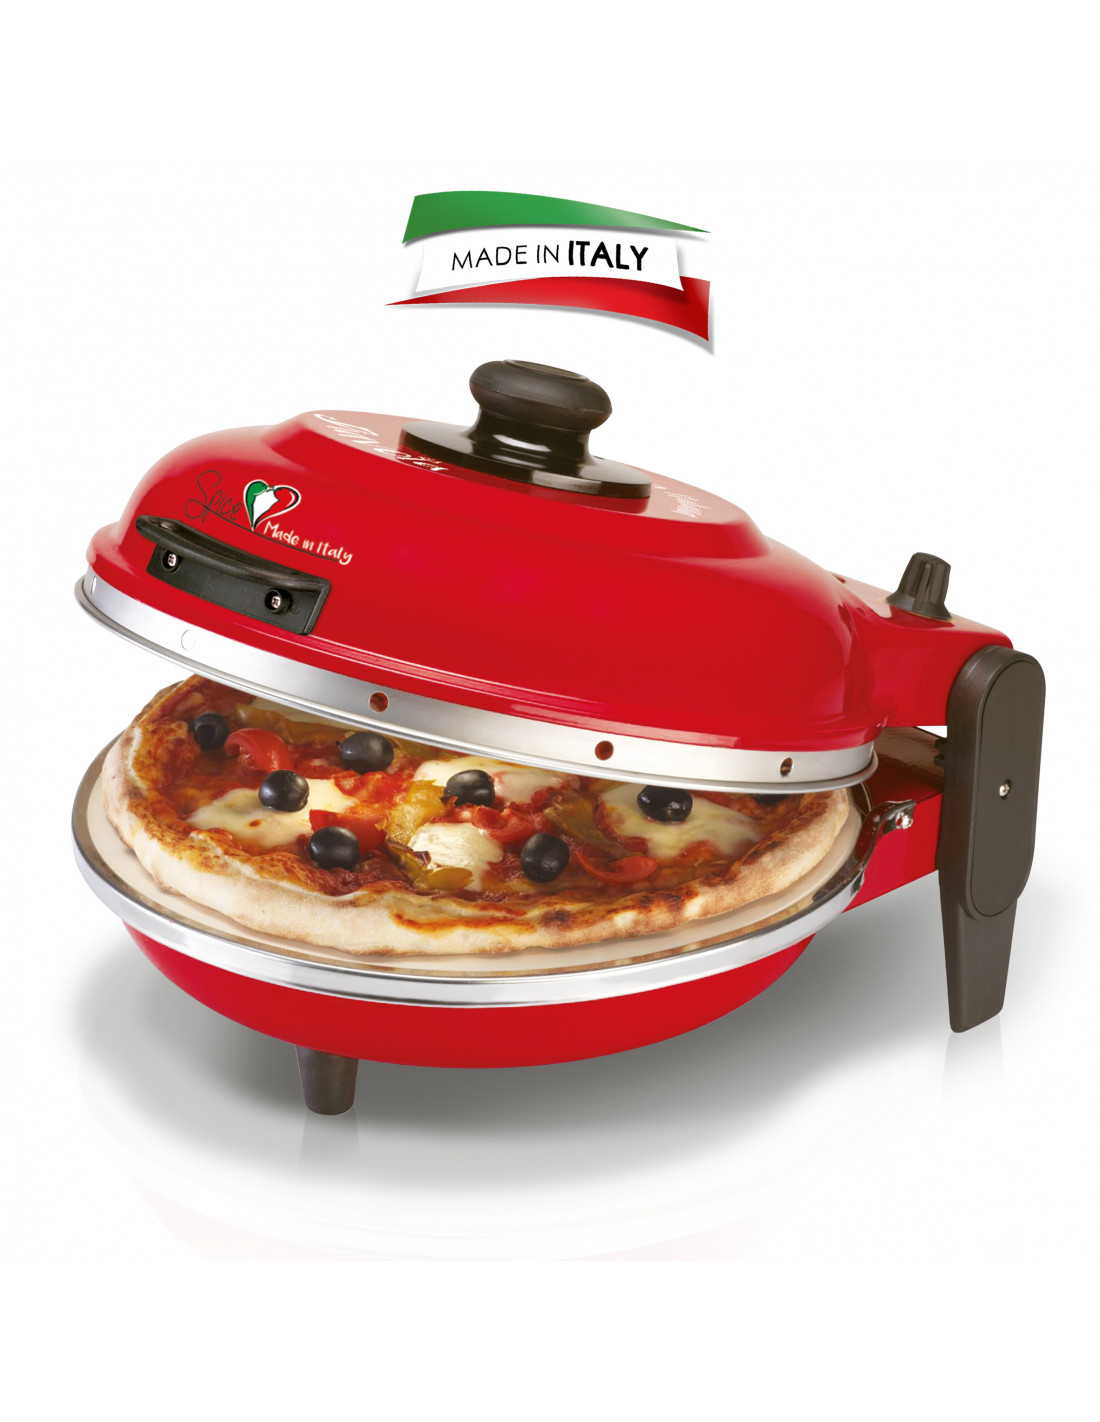 Le four à pizza électrique Gio 130 Ø cuivre rotatif d'Esposito Forni  révolutionne la livraison pour Volfoni à Séclin - Esposito Forni